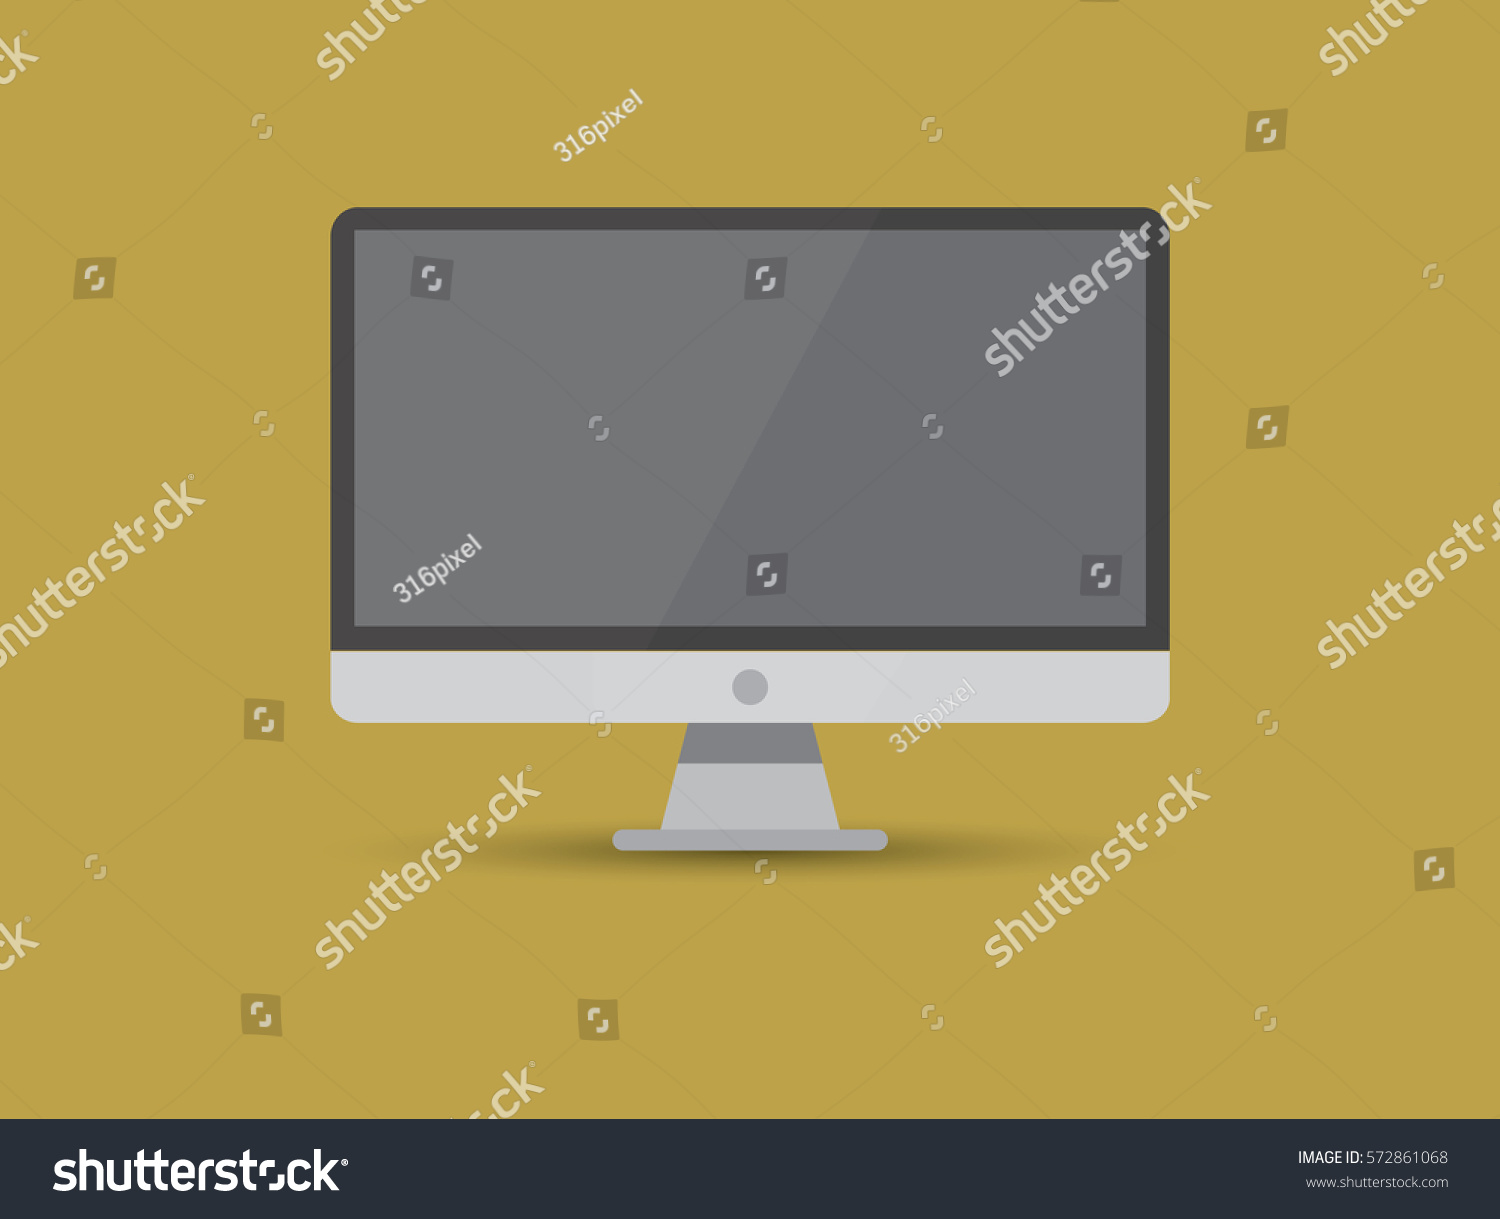 Download Edit Vectors Free Online - Vector laptop. | Shutterstock Editor